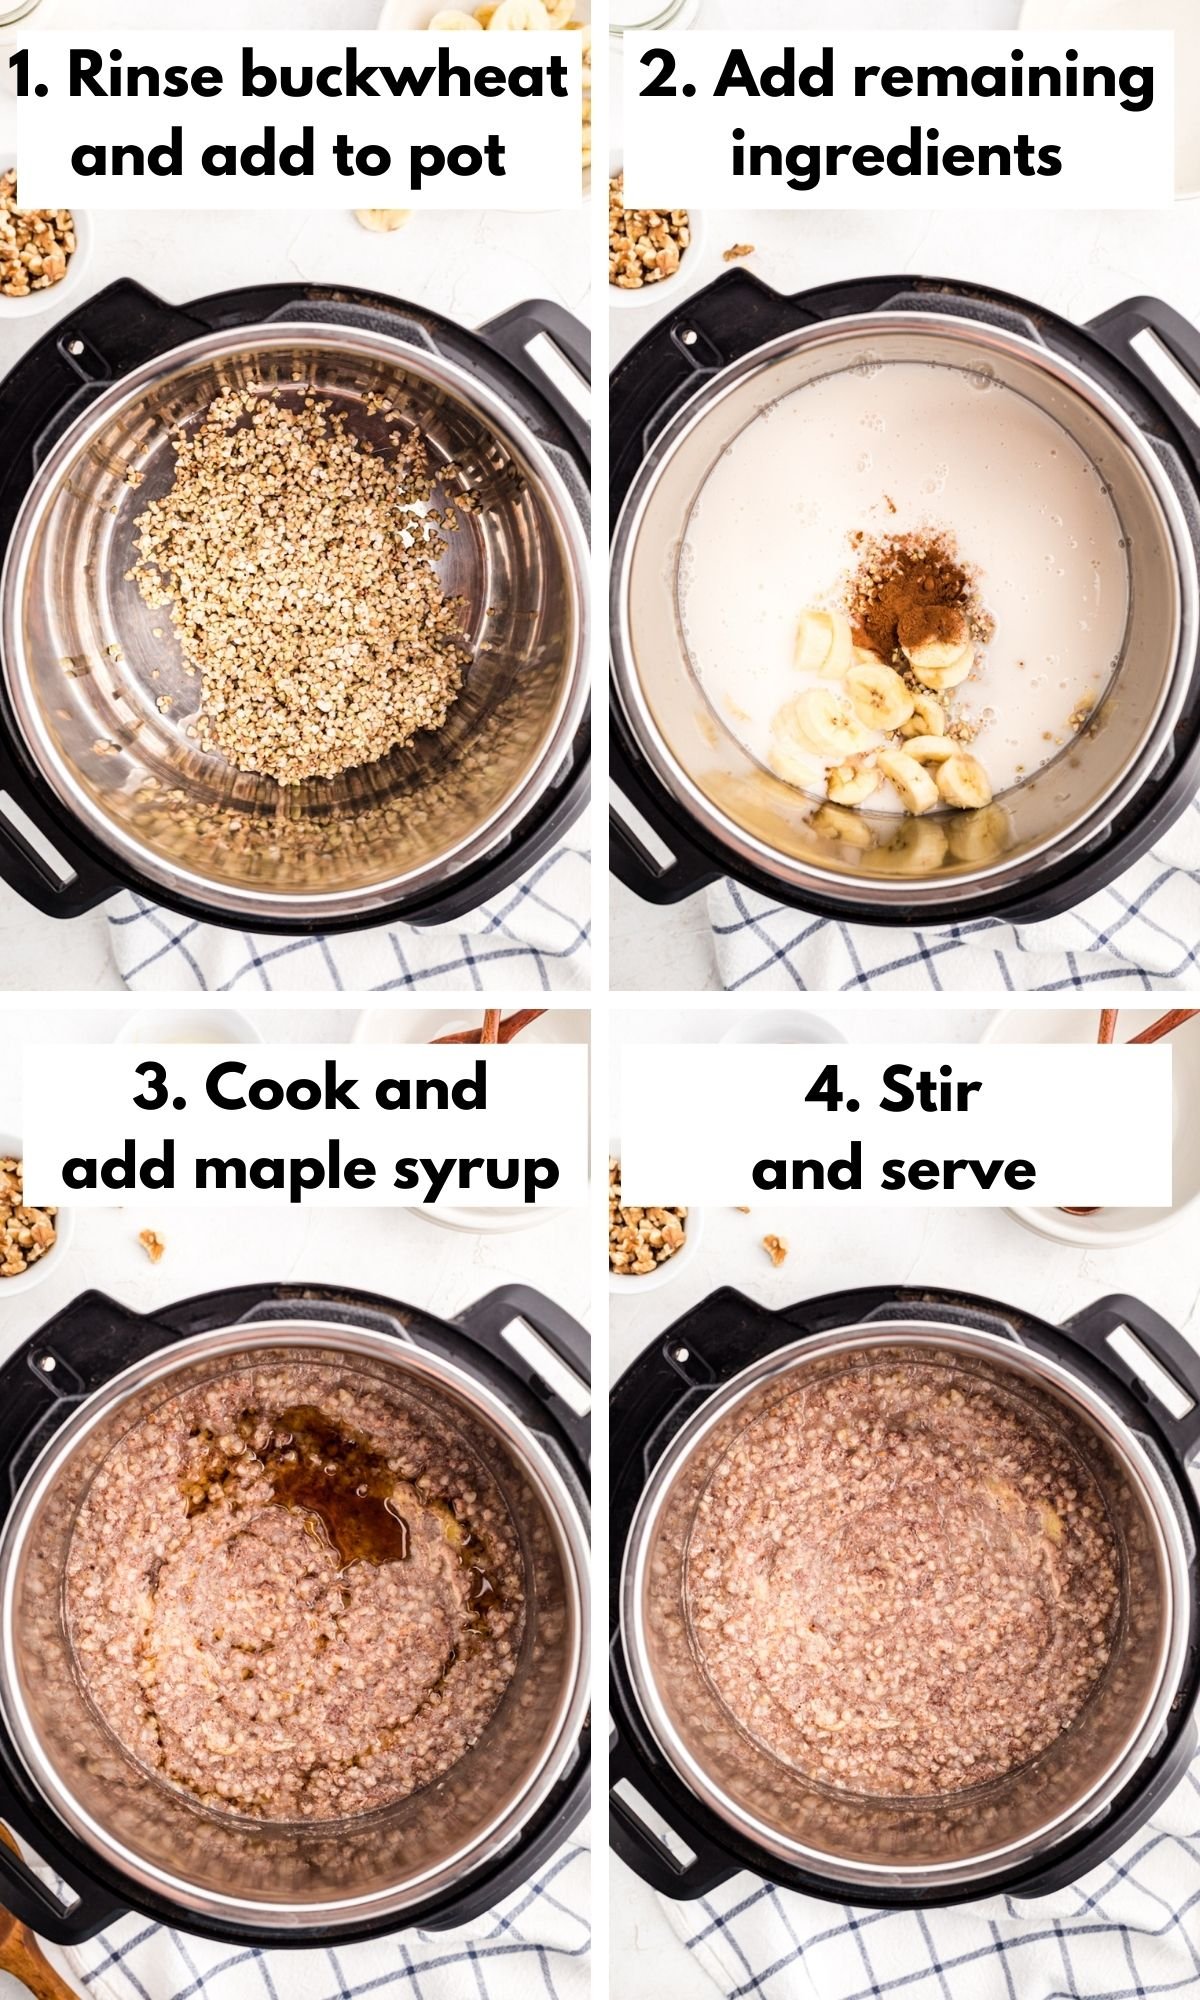 Procese el collage para hacer gachas de trigo sarraceno en una olla instantánea.